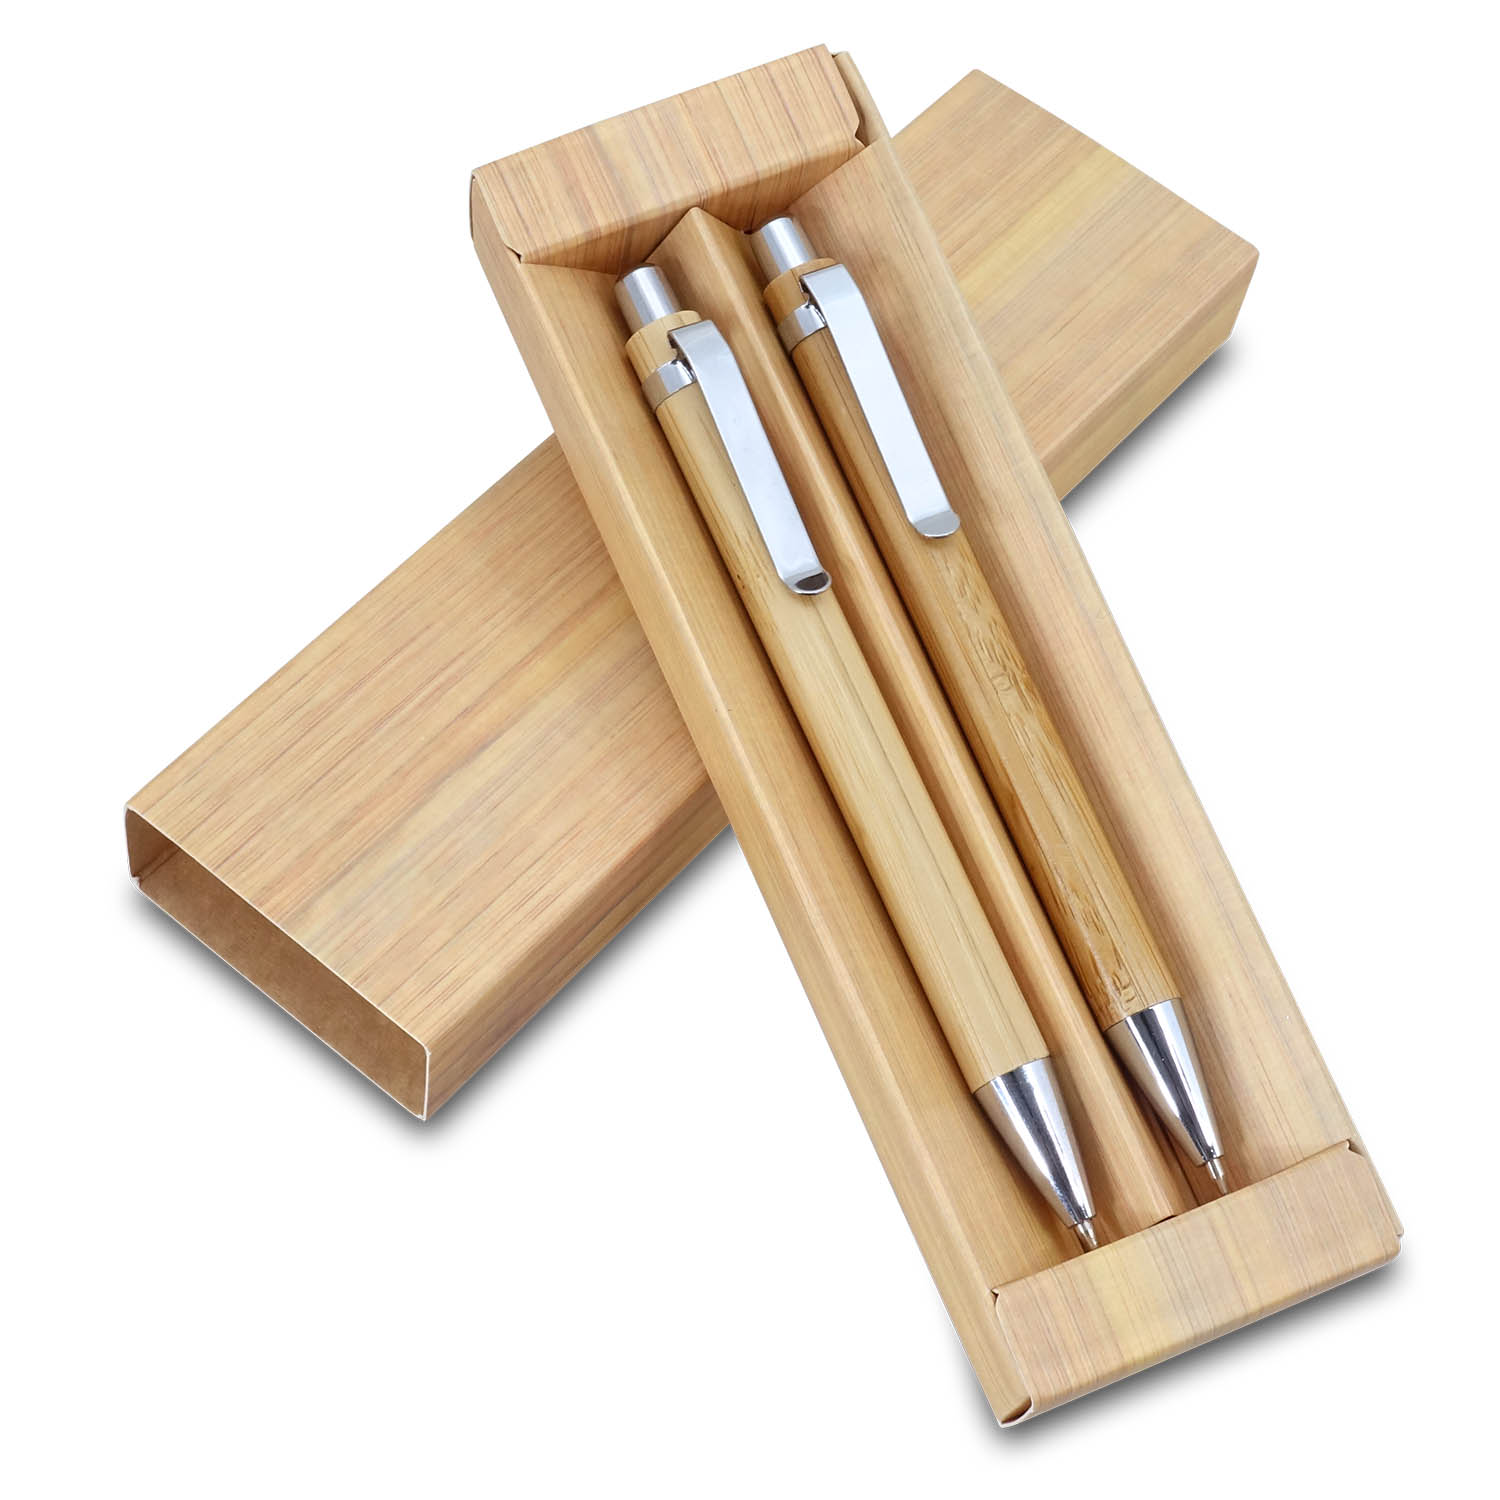 ווד - סט מכשירי כתיבה ידידותי לסביבה, עשוי במבו בשילוב מתכת. 
כולל עט עיפרון ועט ג